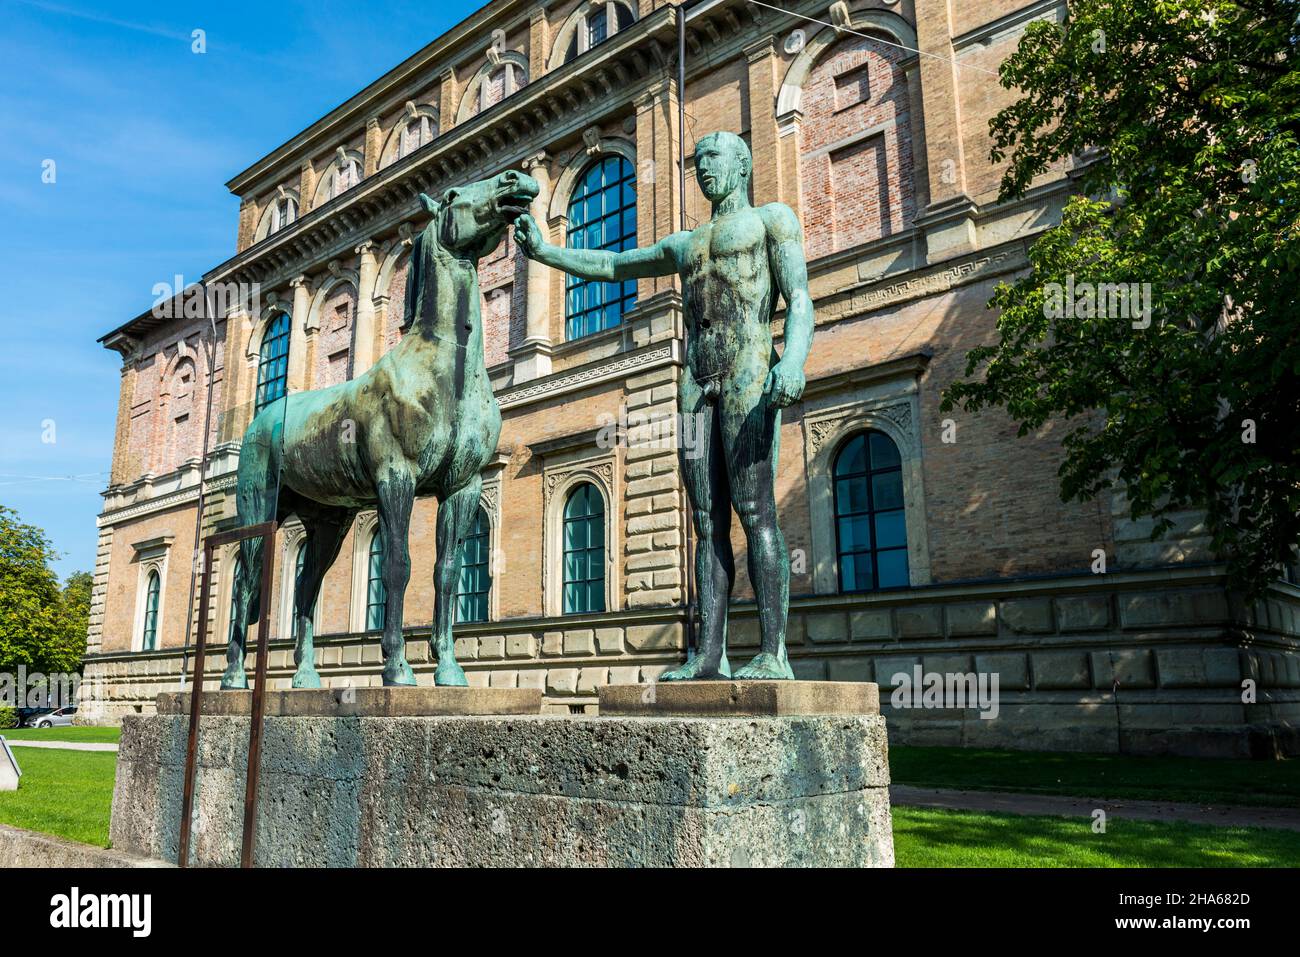 la sculpture en bronze rossbändiger de hermann hahn devant l'ancien pinakothek de munich du projet blessures de la mémoire Banque D'Images